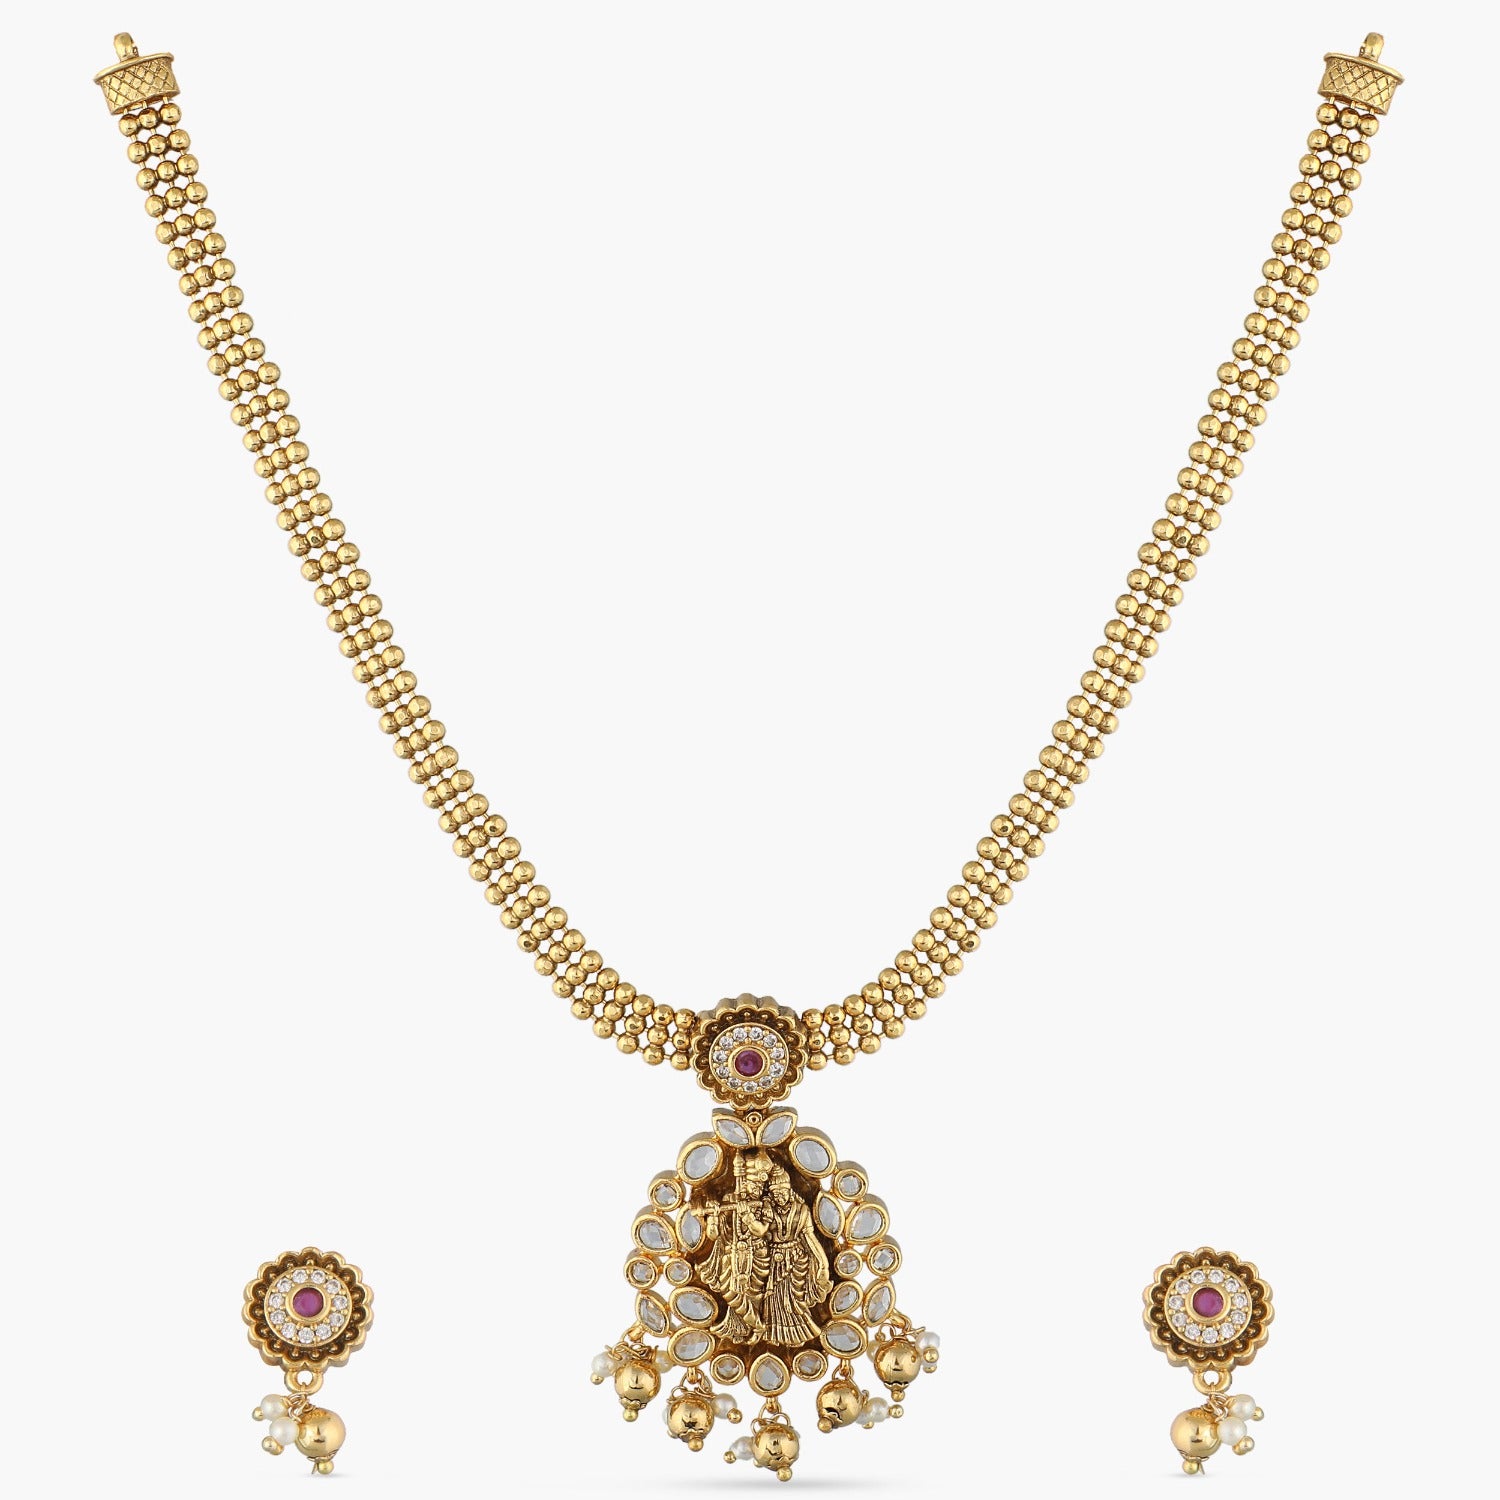 Buy Designs Online   - India's #1 Online Jewellery Brand